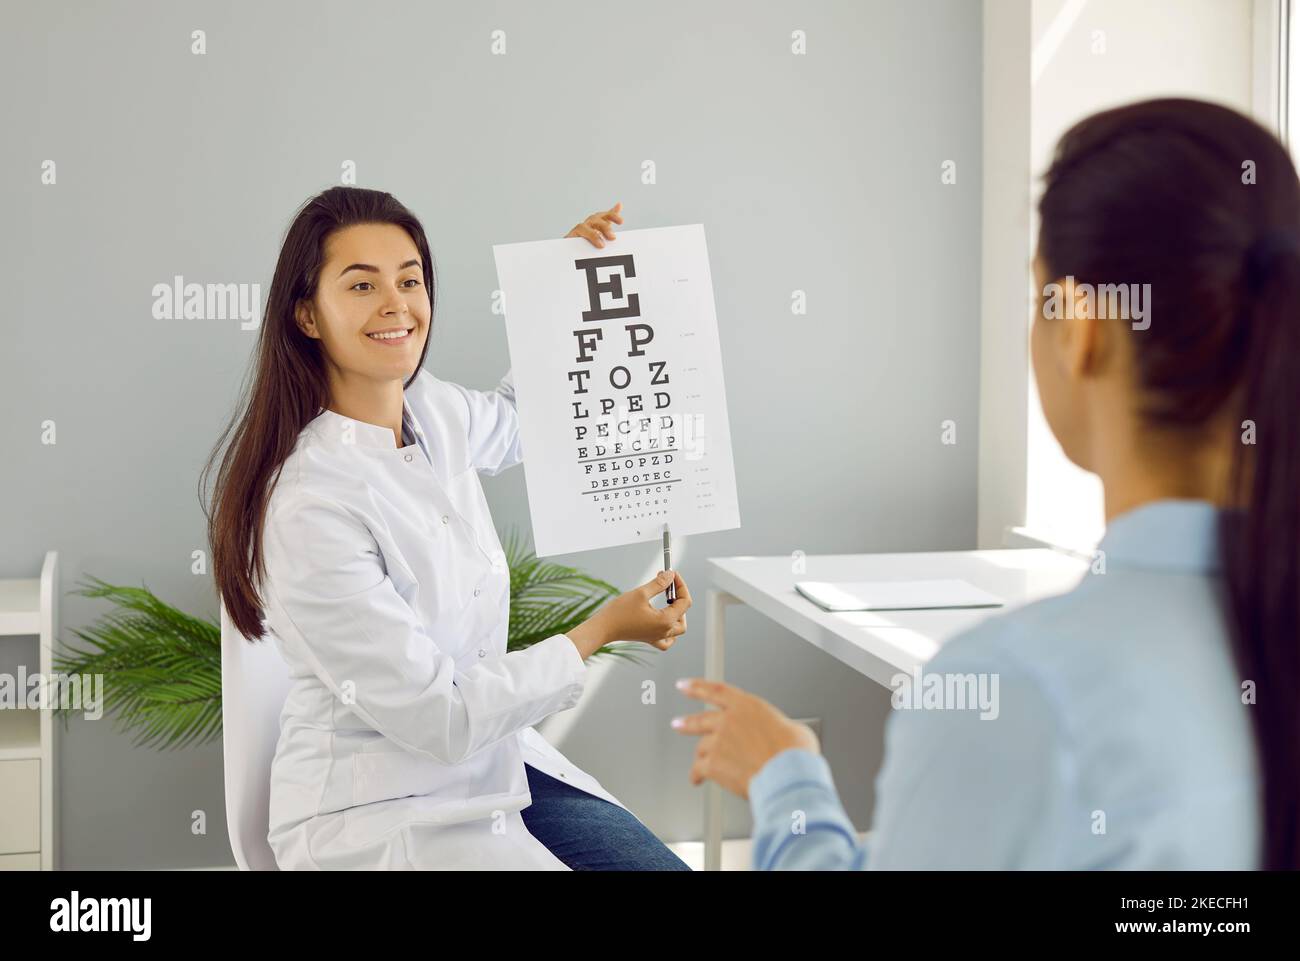 L'ophtalmologiste vérifie la vue de la femme en pointant vers de petites lettres sur la carte pour le test de vision. Banque D'Images